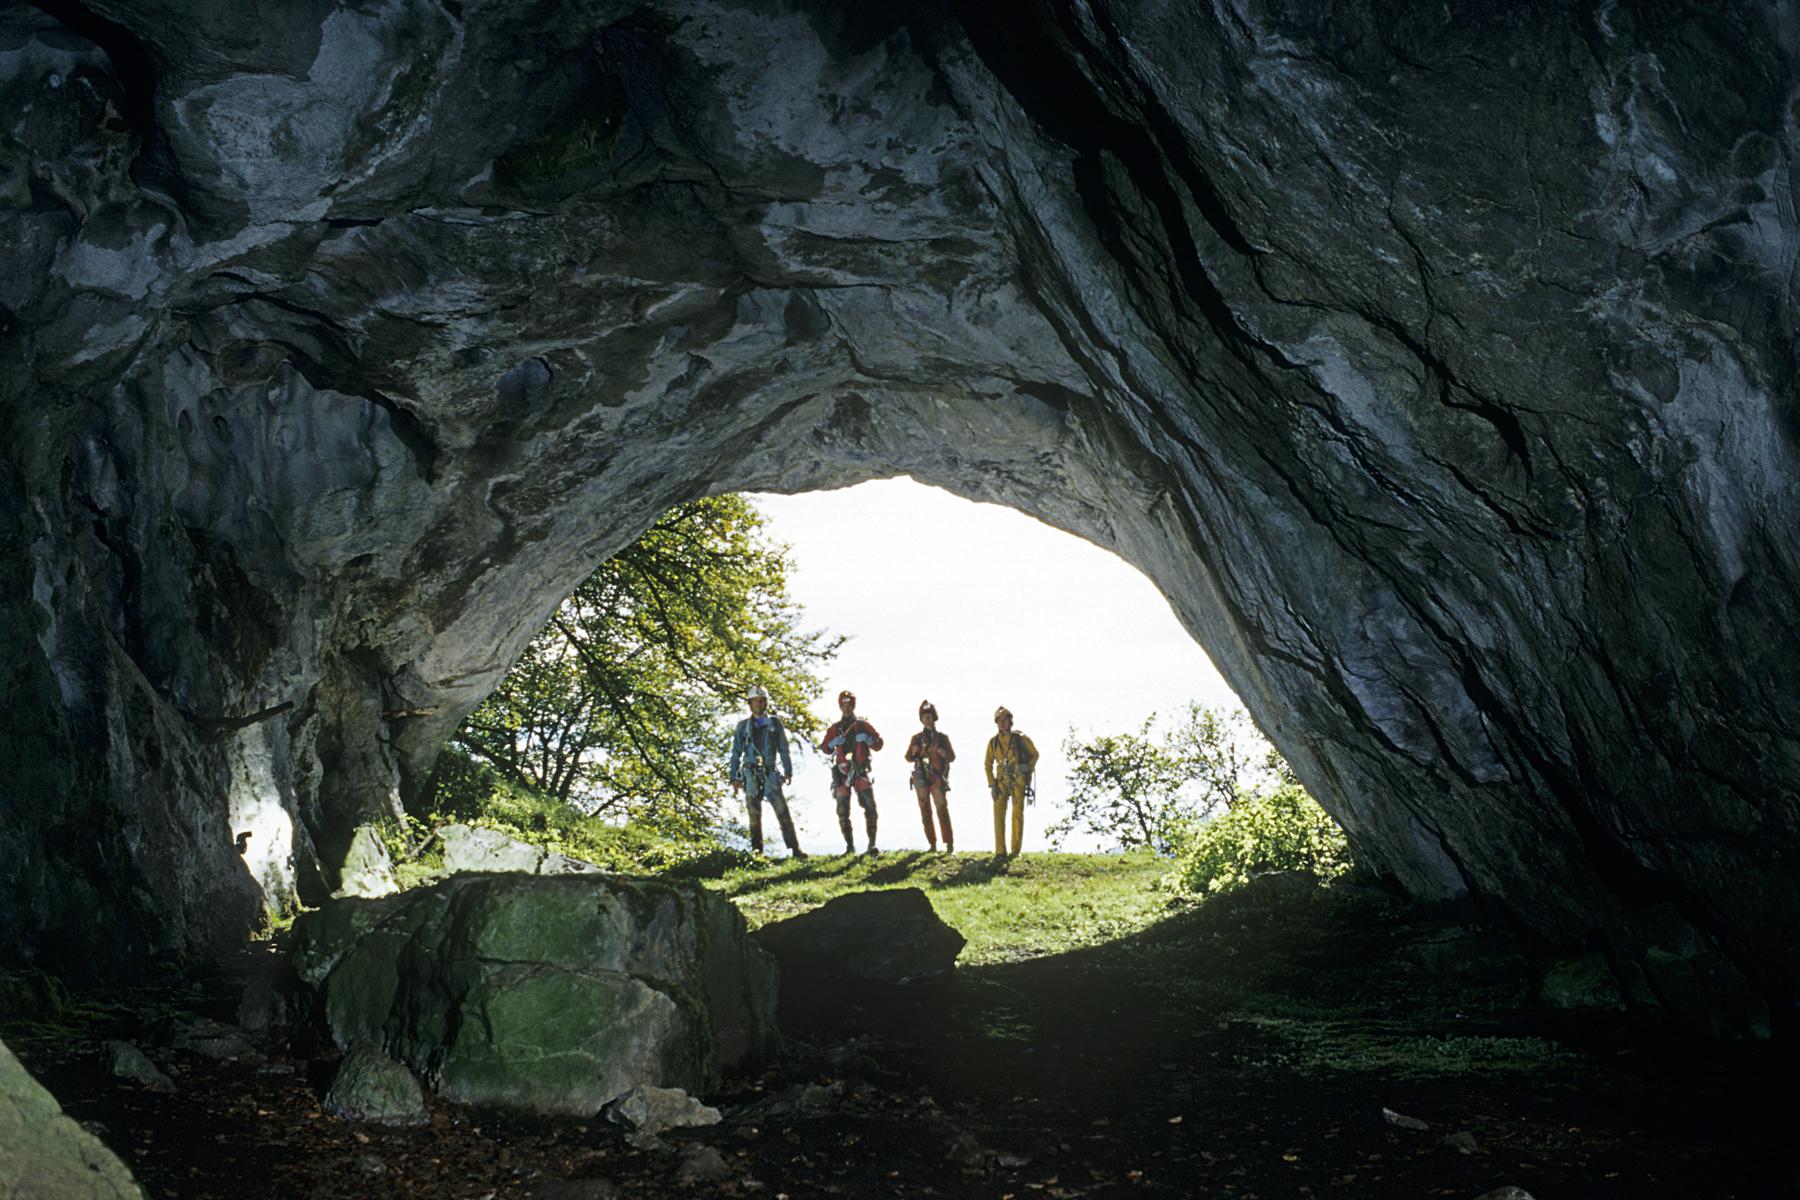 Groupe de spéléologues dans l'entrée inférieure de la Grotte de Burtetch (Haute-Garonne). Cette cavité constitue une traversée (Octobre 2000, Nikon FM2)